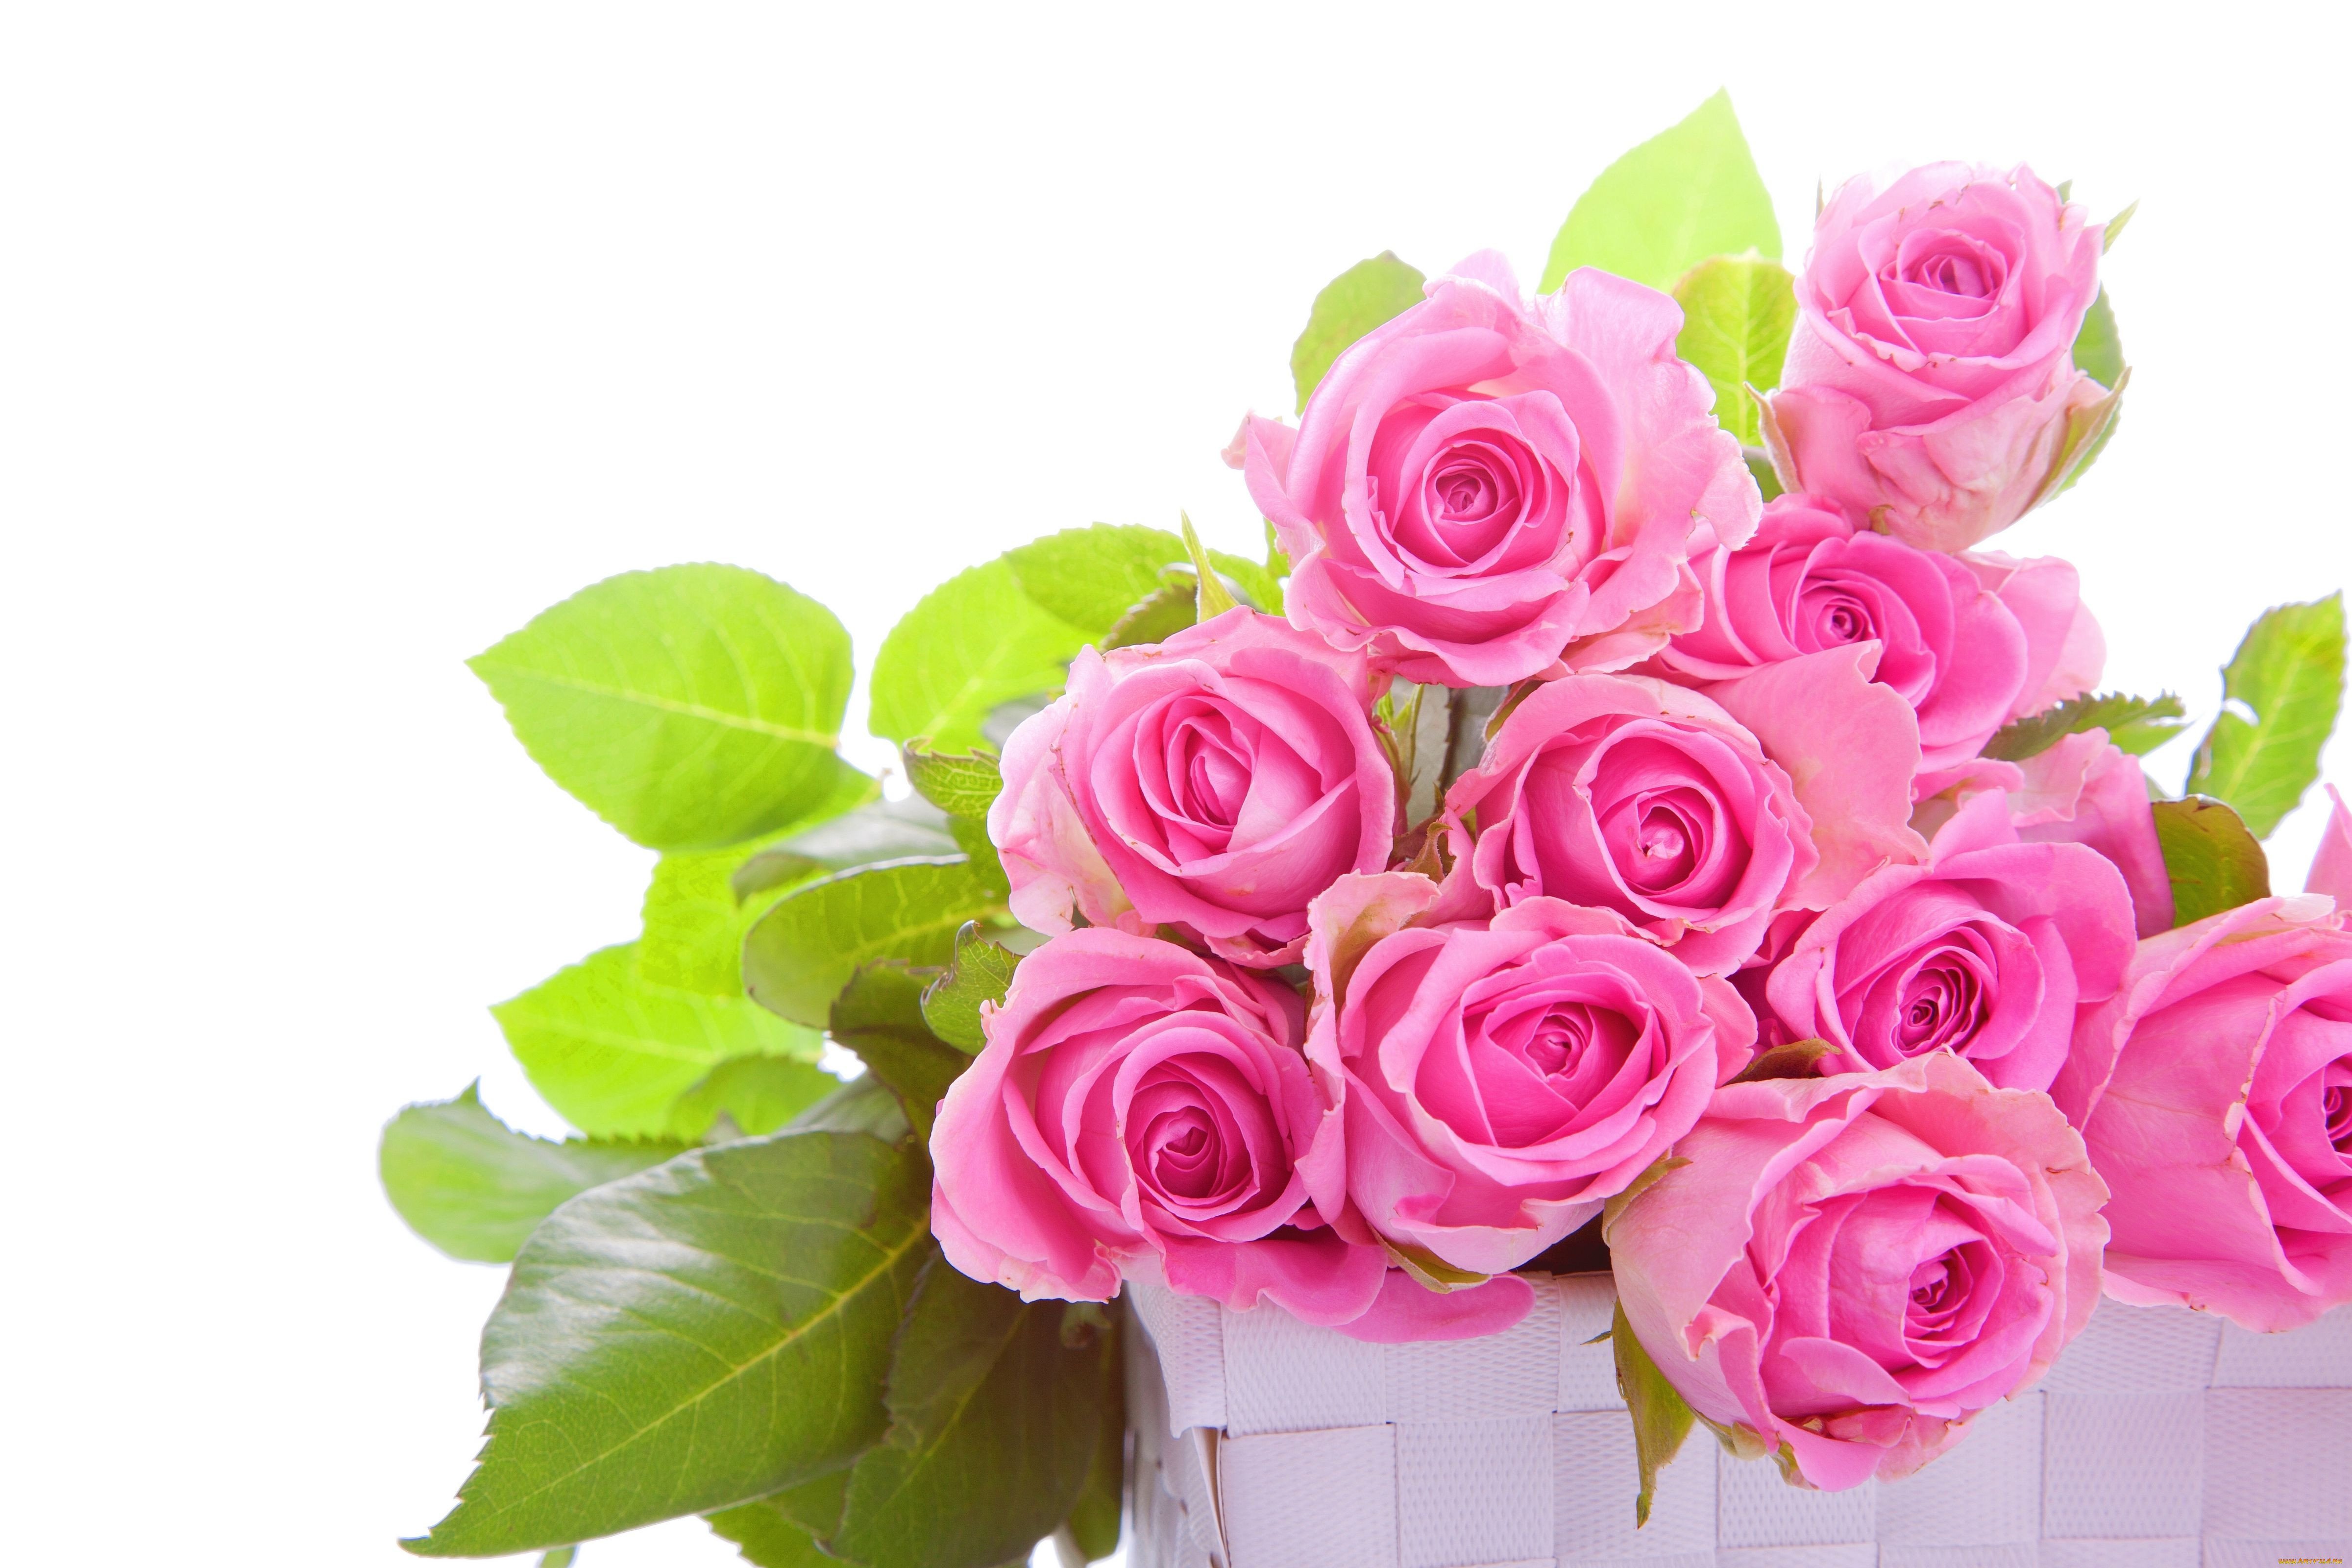 Открытка с красивыми цветами поздравляем. Розовые розы. Шикарные цветы. Красивый букет на белом фоне.